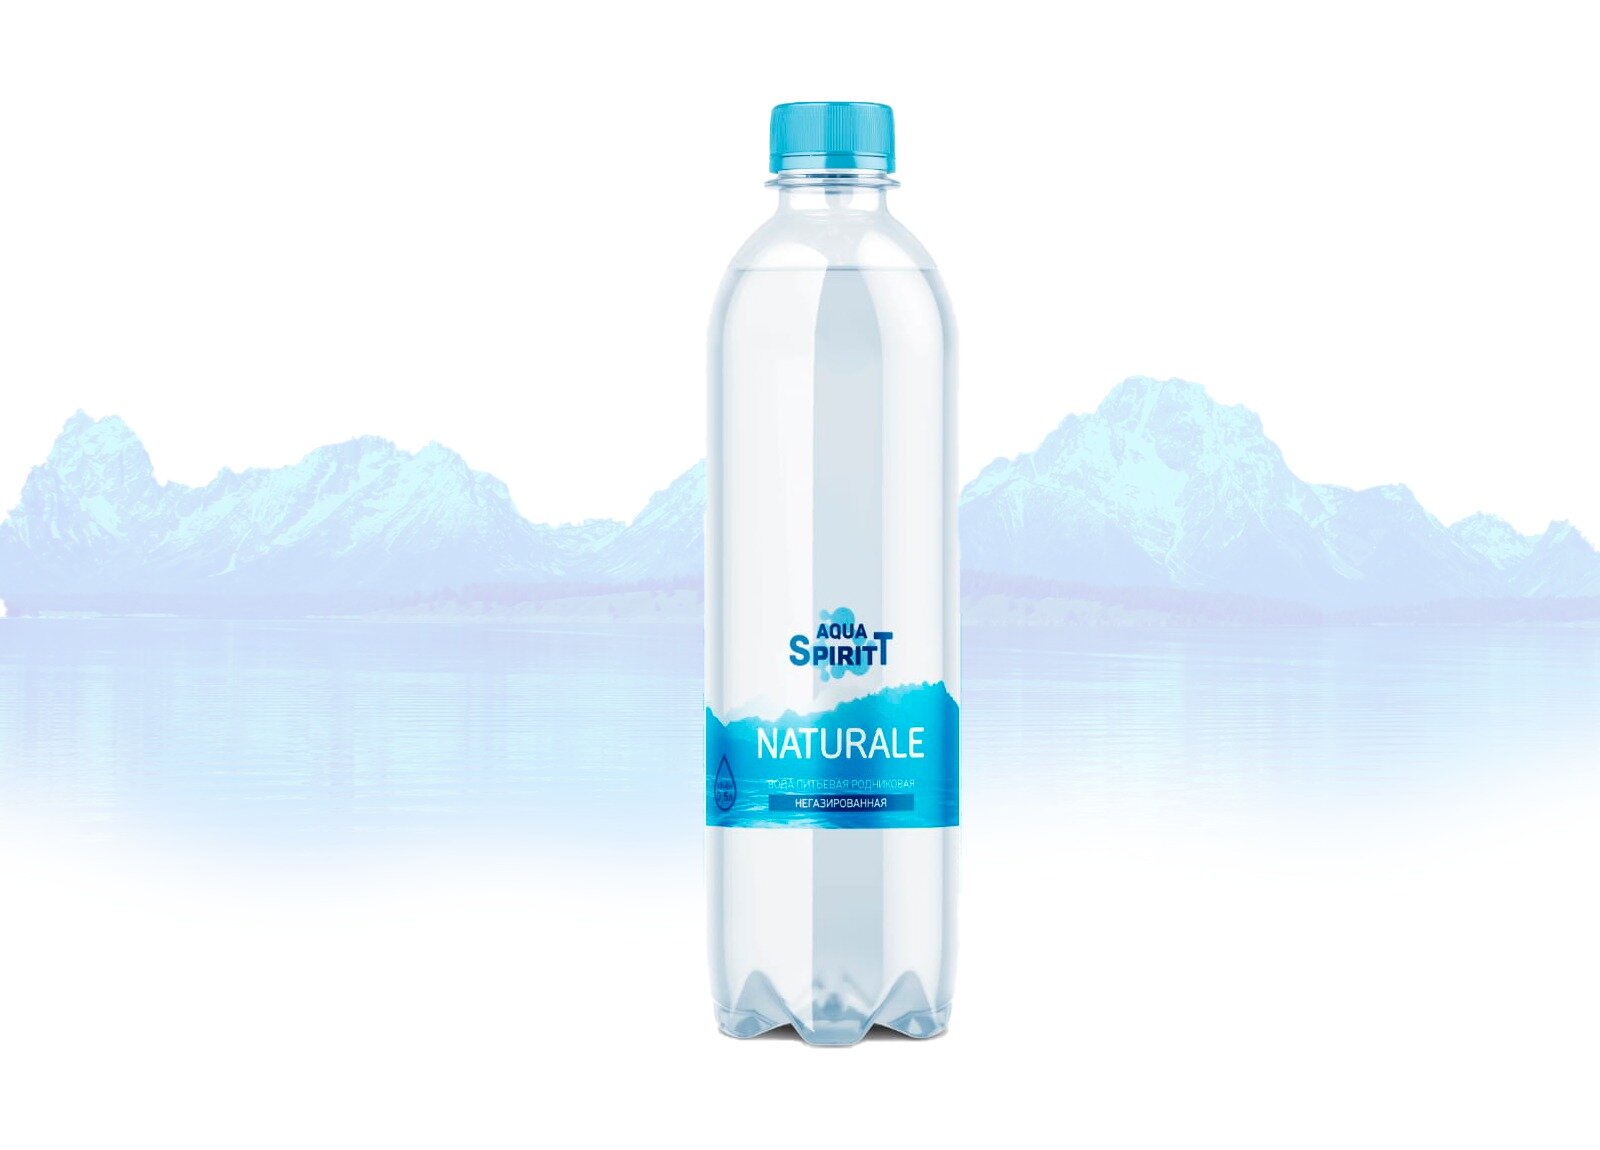 Вода питьевая родниковая NATURALE негазированная ТМ Aqua SpiritT 0,5 литра, упаковка 12 бутылок